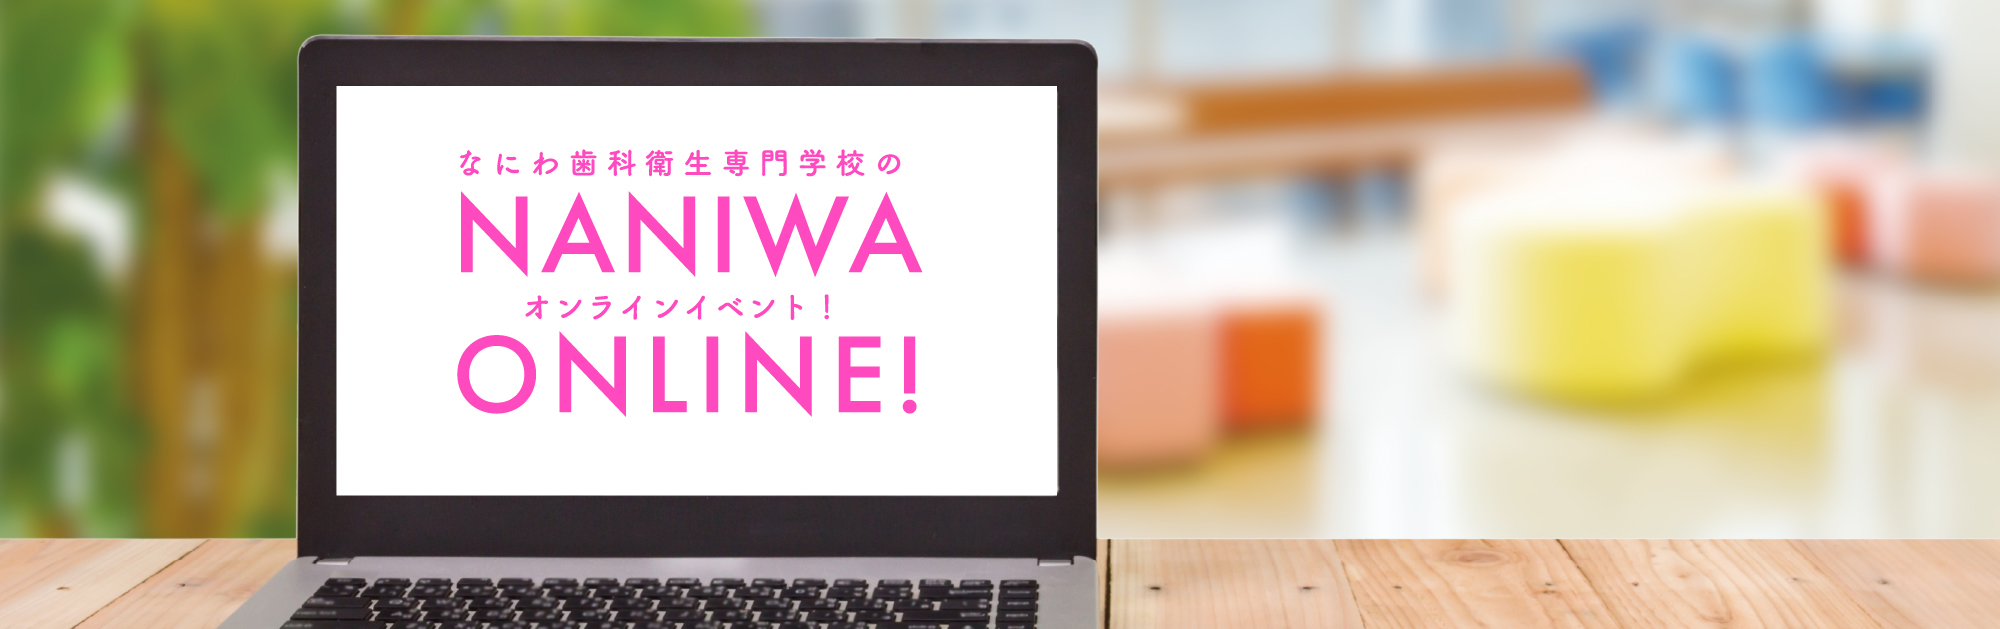 なにわ歯科衛生専門学校のオンラインイベント！NANIWA ONLINE!